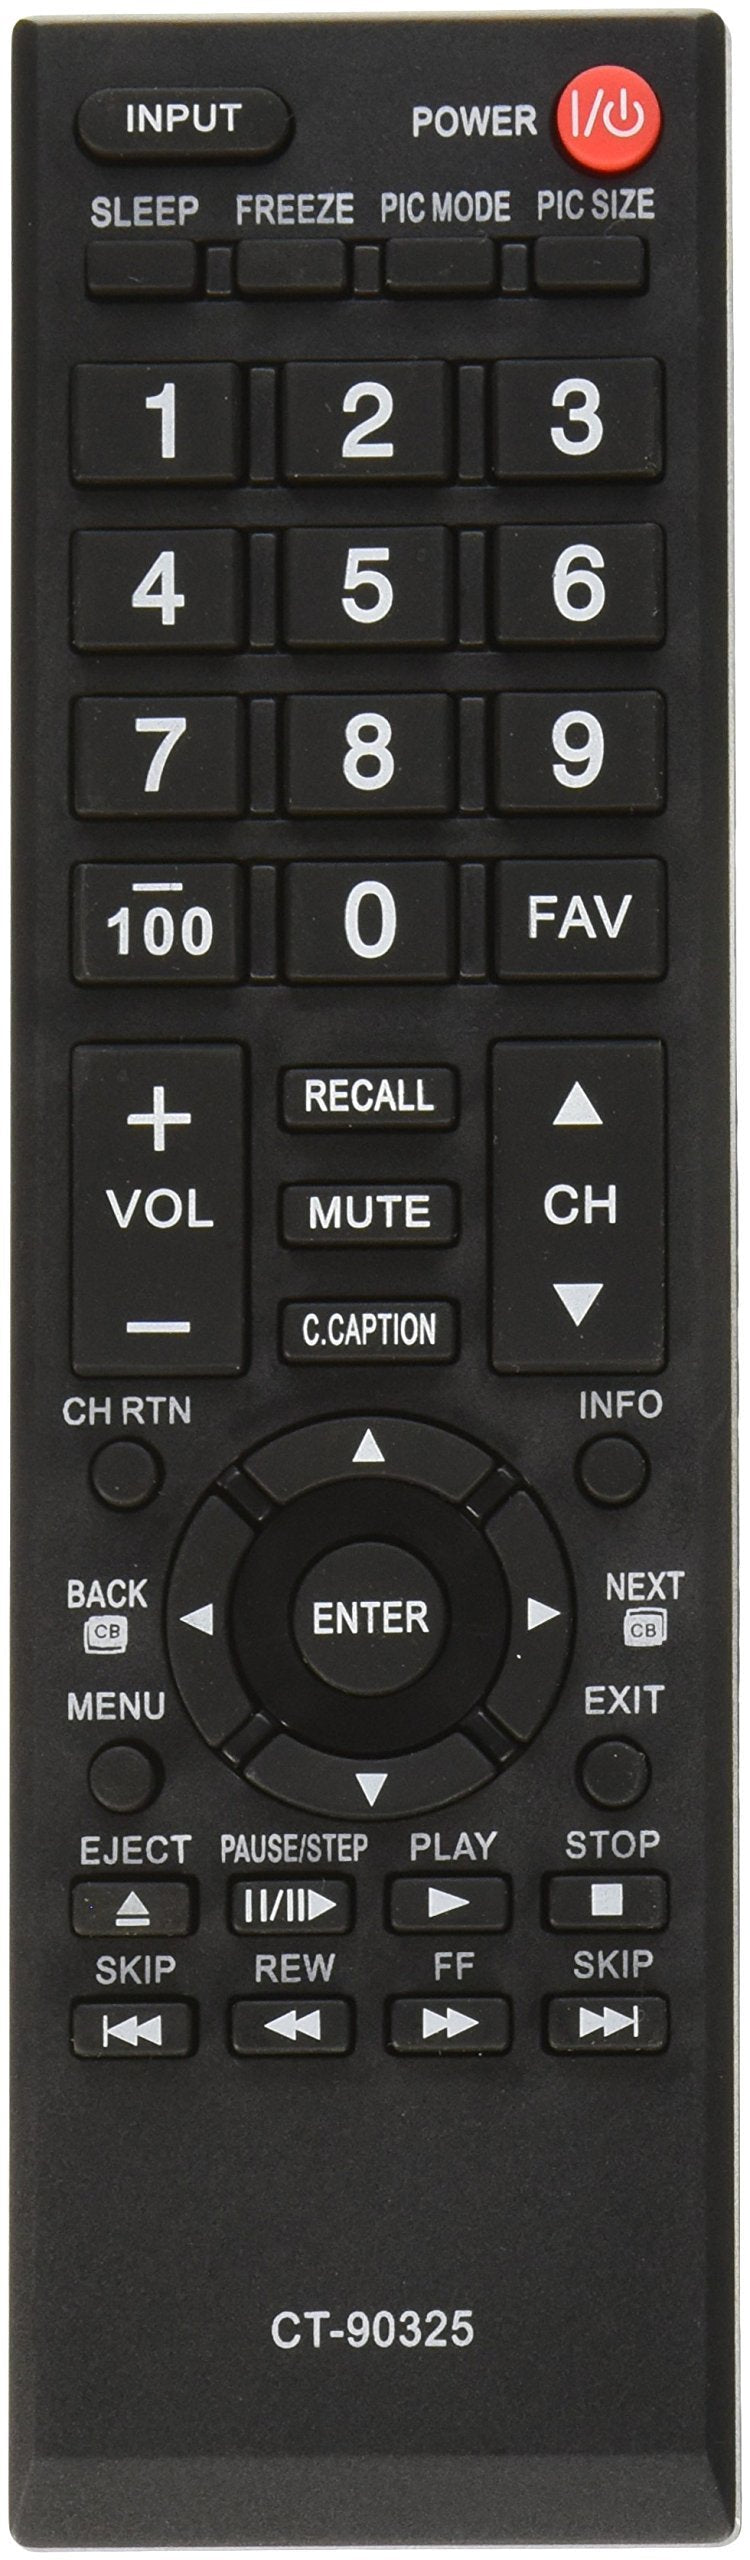 Nettech CT-90325 Lcd Tv Remote Control for Toshiba - LeoForward Australia